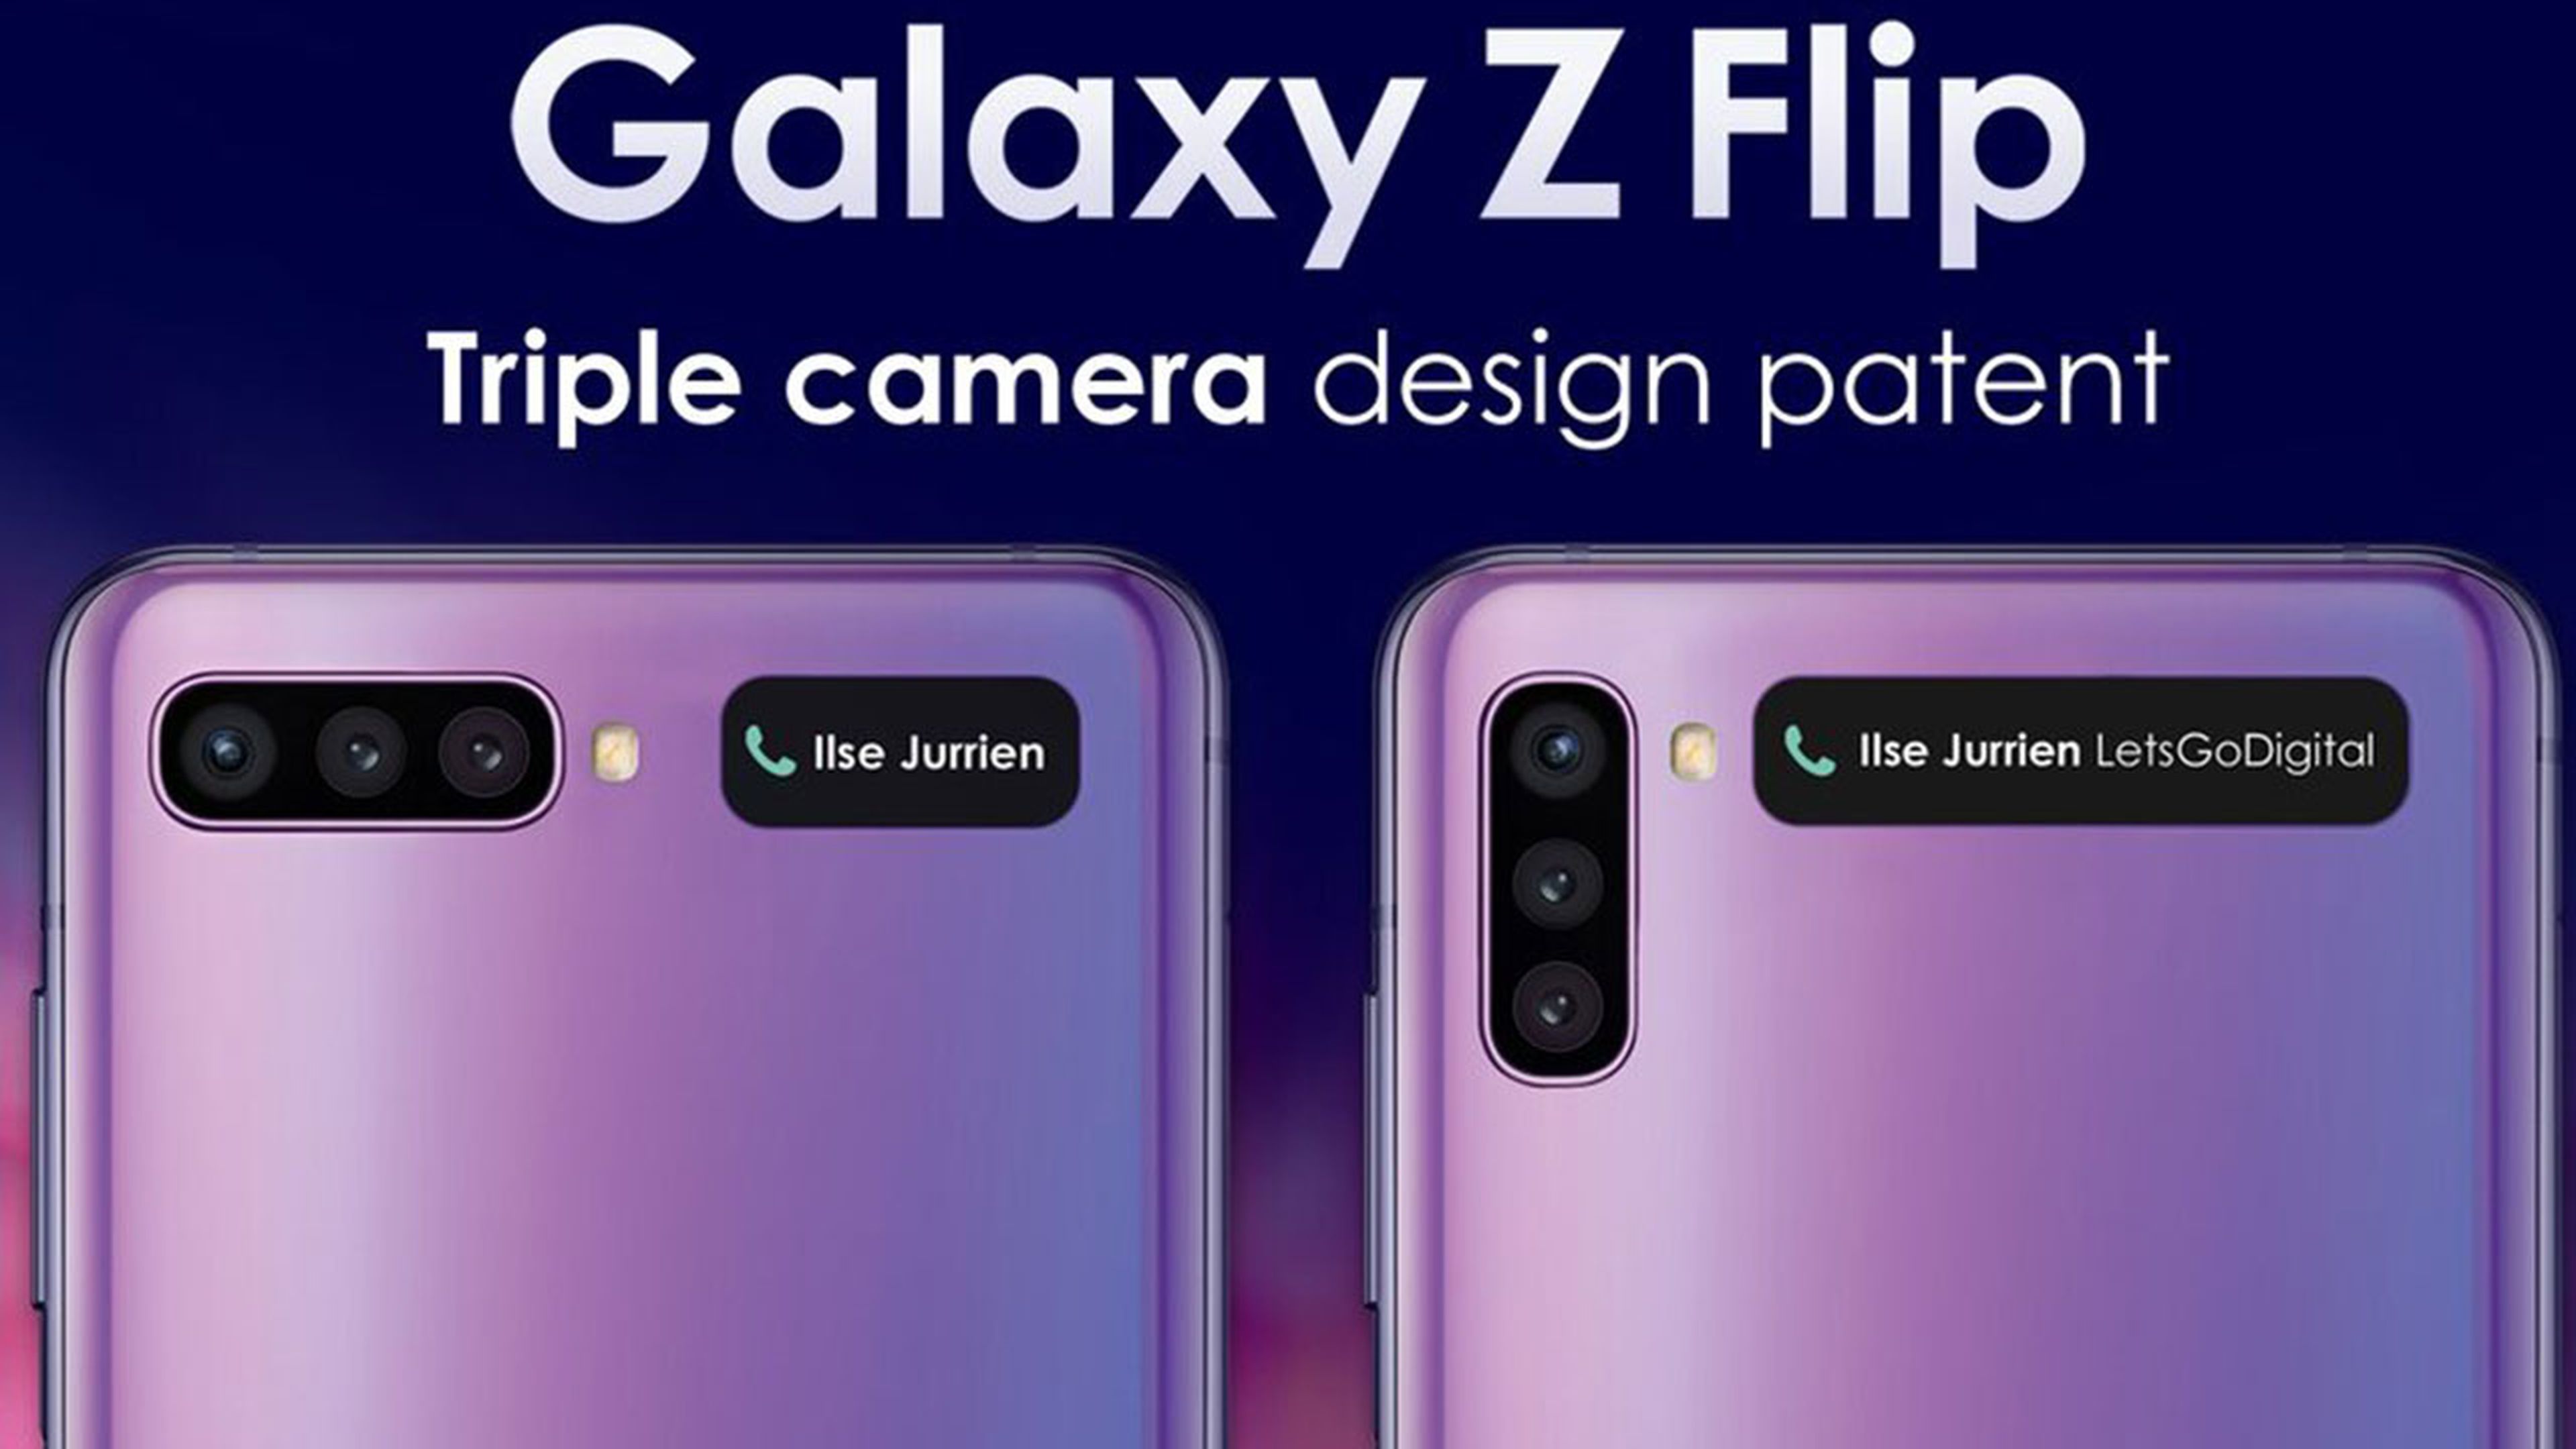 Patente Galaxy Z Flip 2